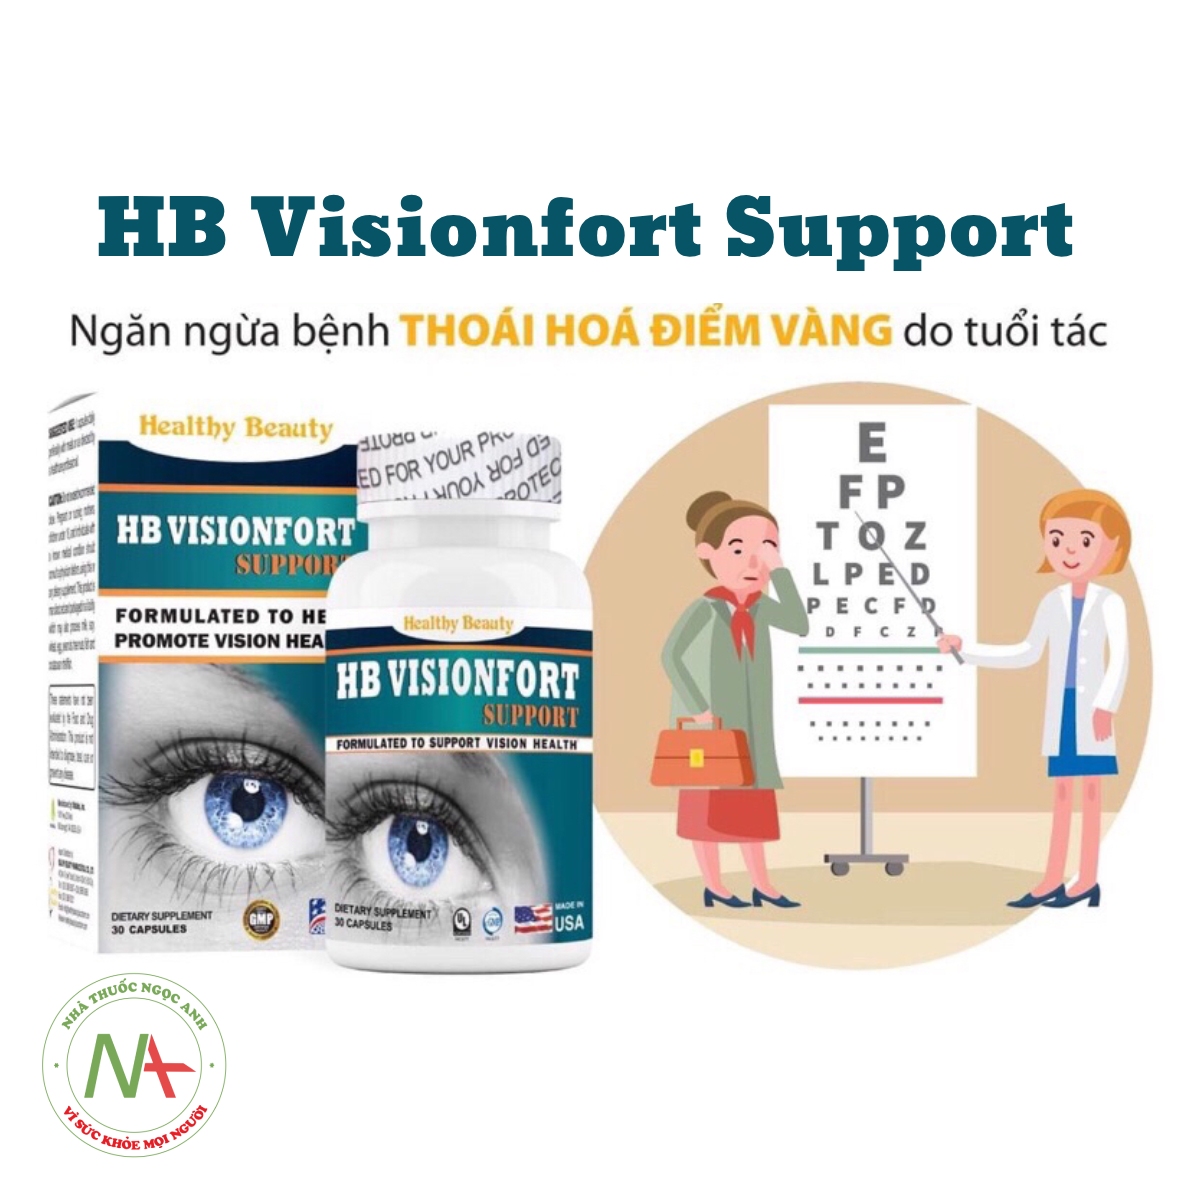 HB Visionfort Support ngăn ngừa thoái hóa điểm vàng